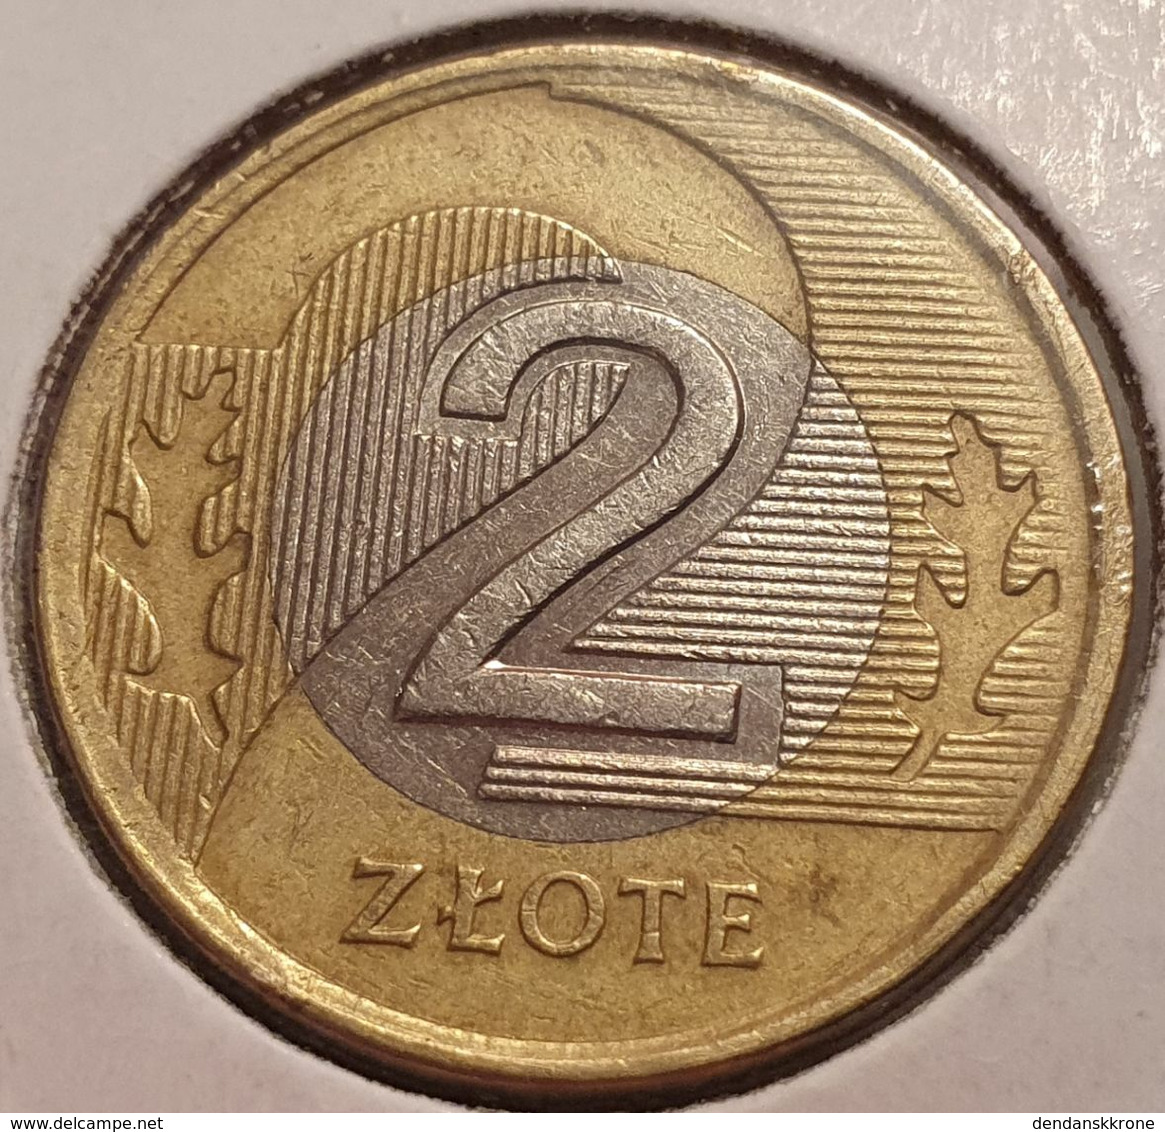 2 Zlote (Zloty) Pologne (Polen-Polska) 1994 - bi-metal